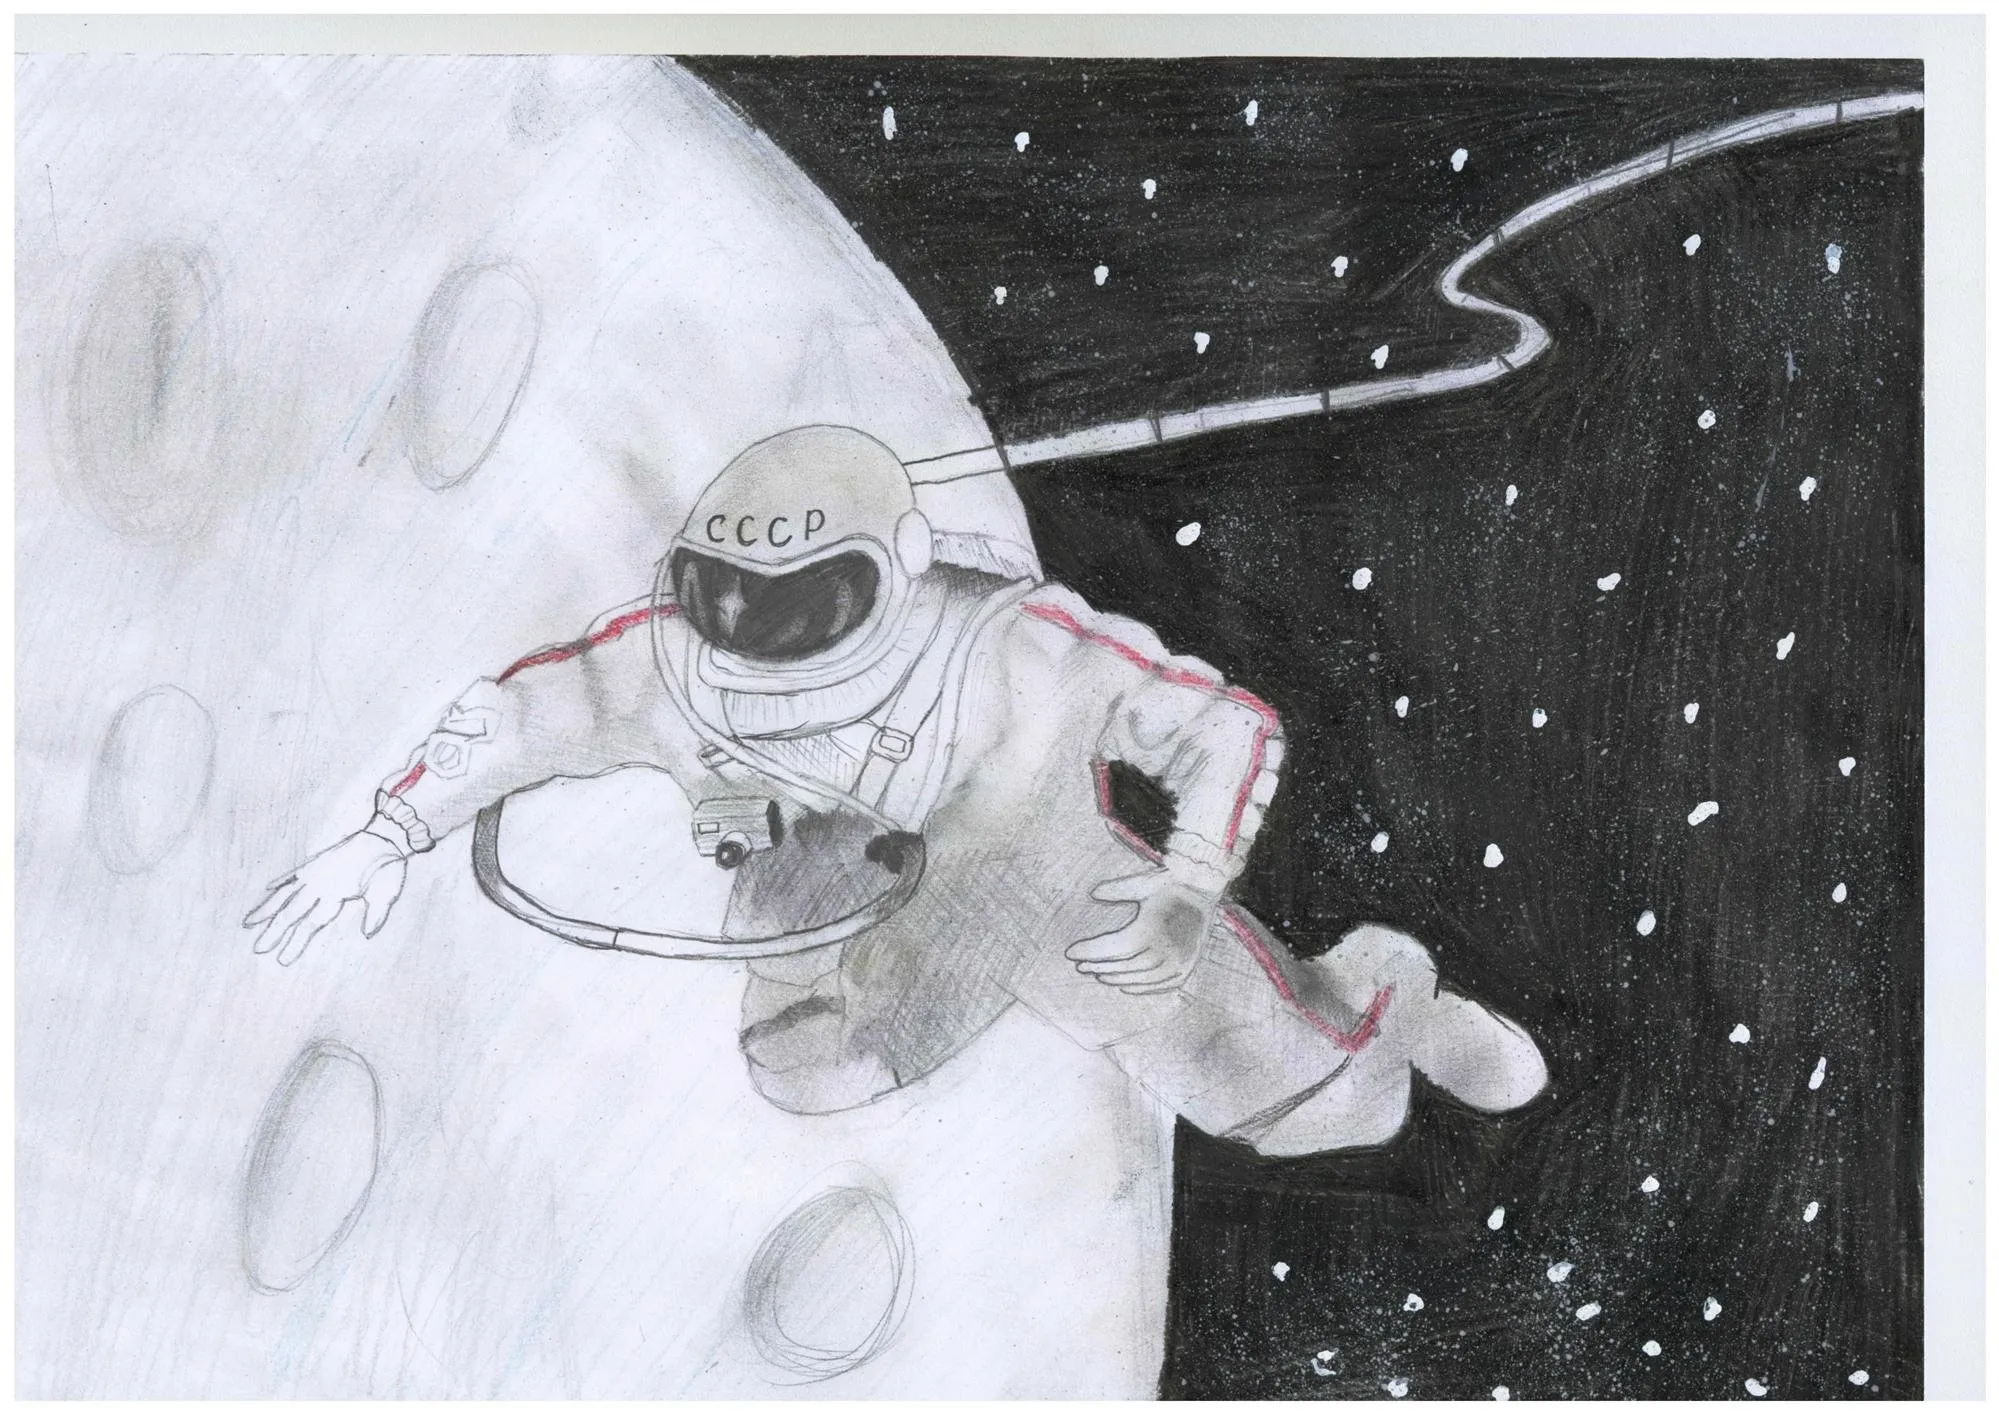 Рисунок на тему космос легкий карандашом. Рисунок на космическую тему. Космос рисунок карандашом. Рисунок на тему космонавтики. Рисунок на тему космос карандашом.